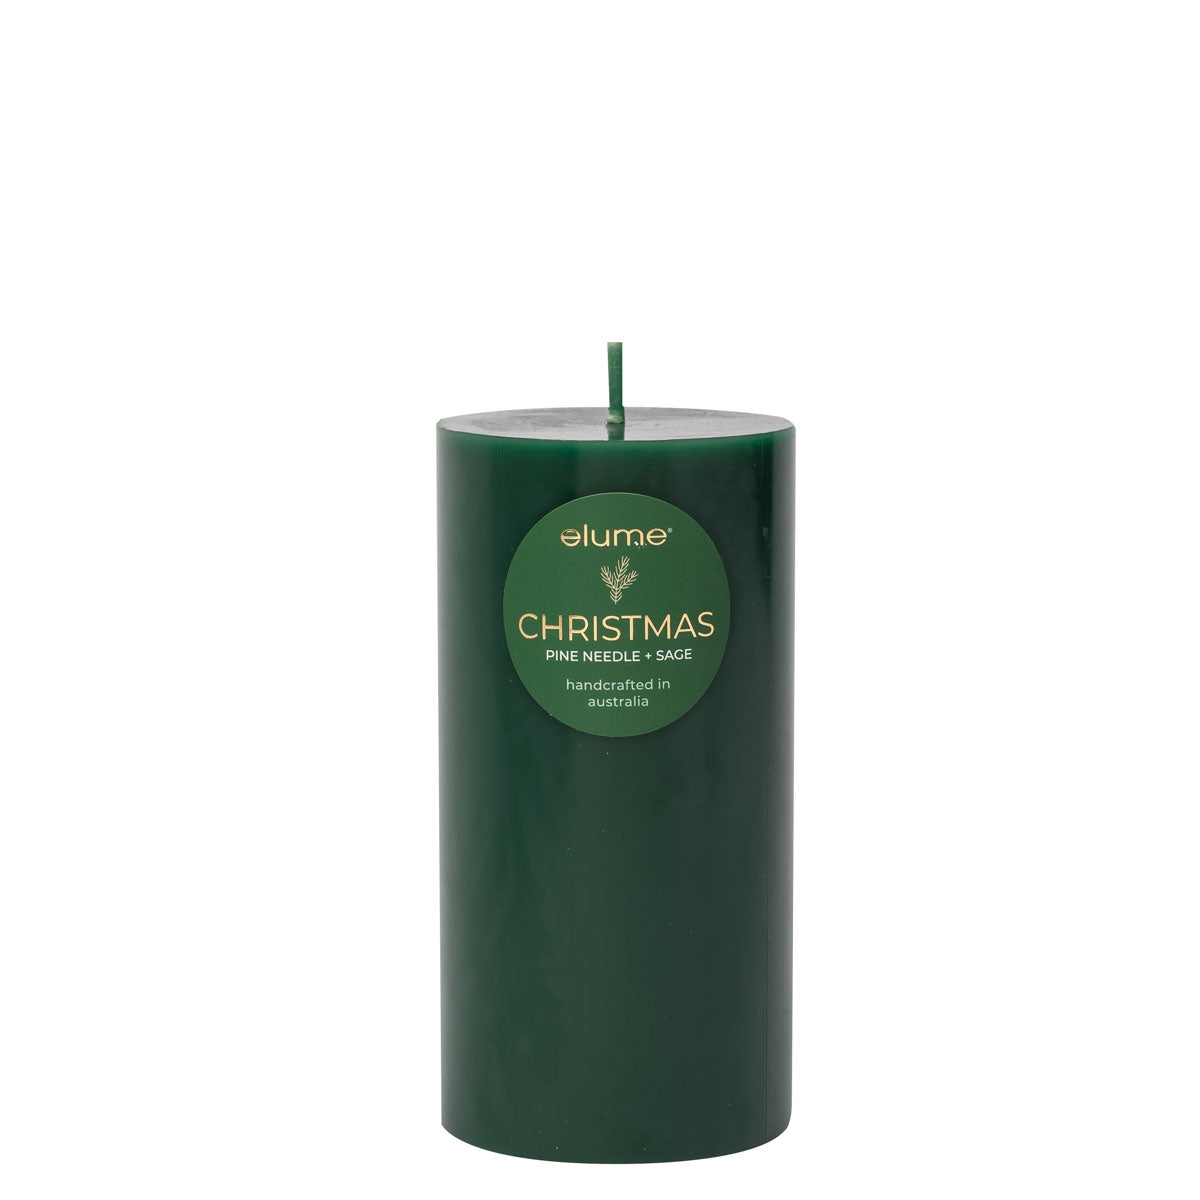 Christmas Pine Needle & Sage Pillar Candle